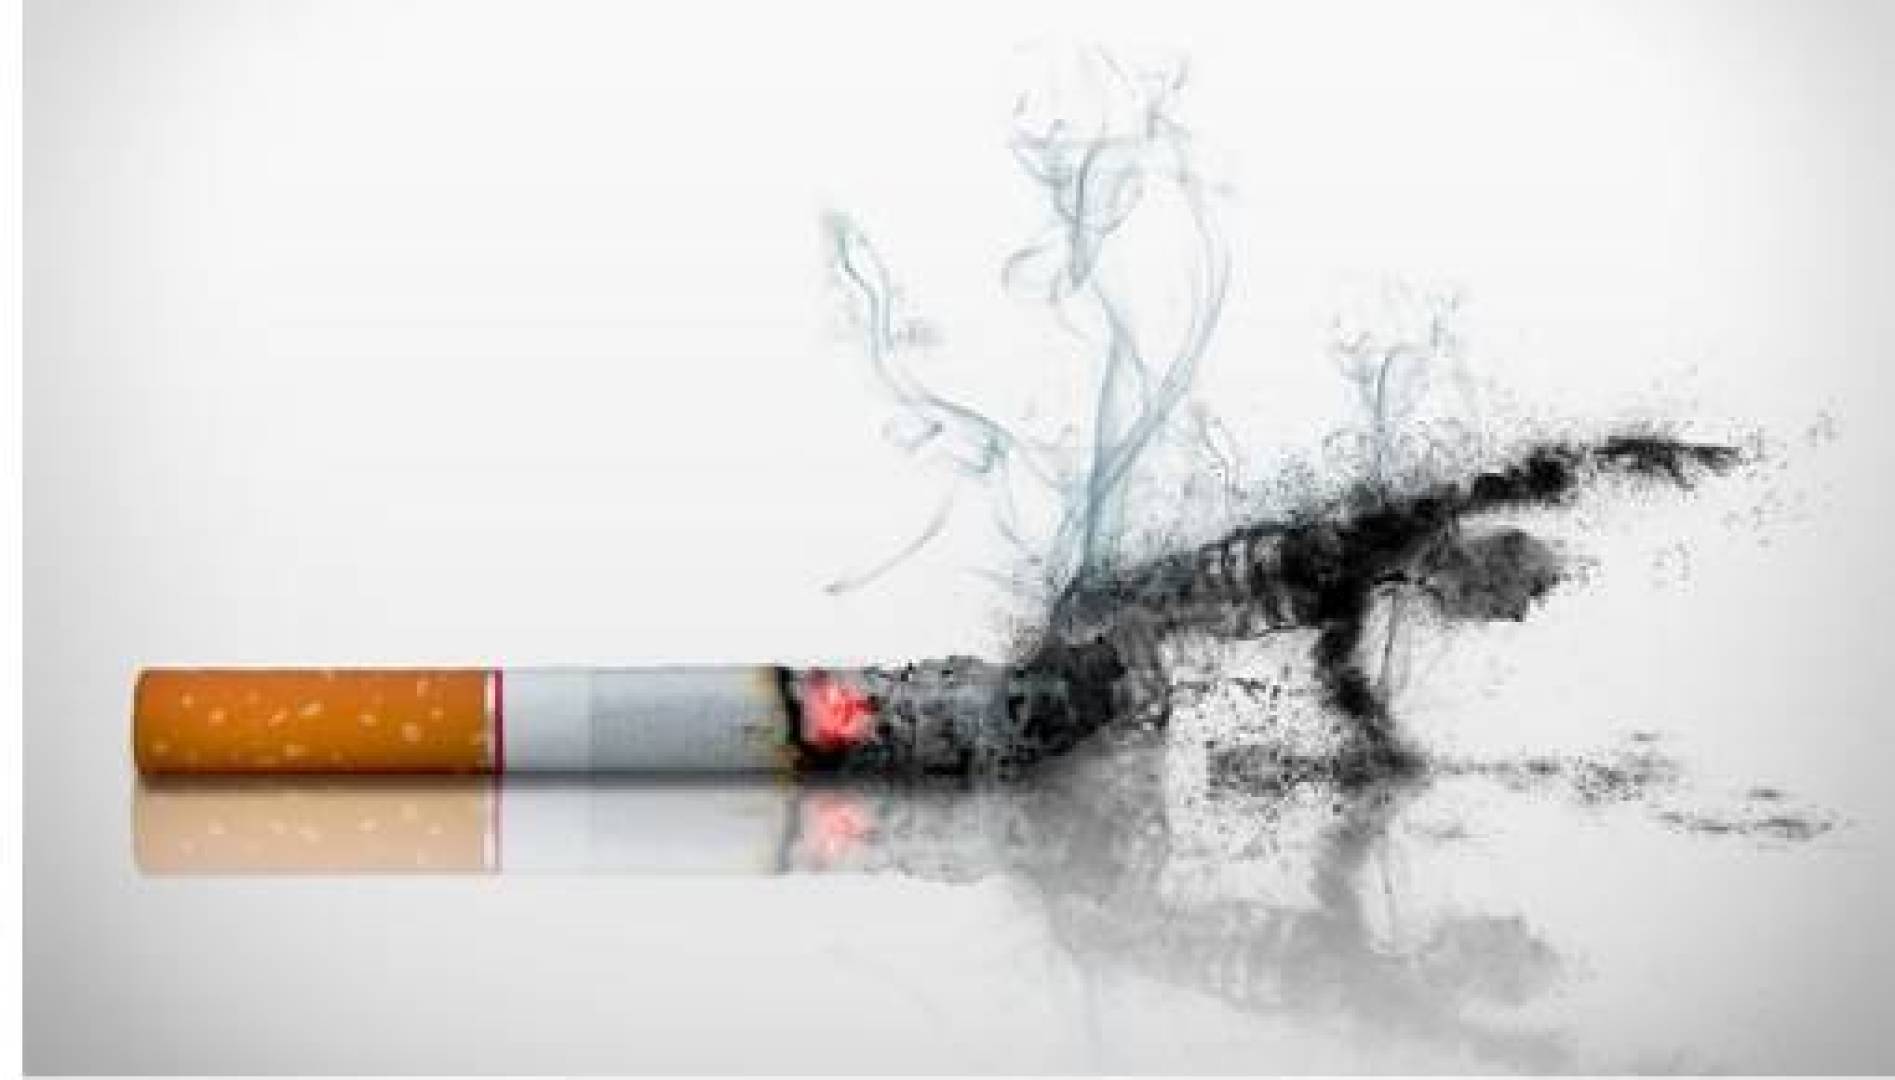 التدخين يزيد من خطر الإصابة بالسكتة الدماغية